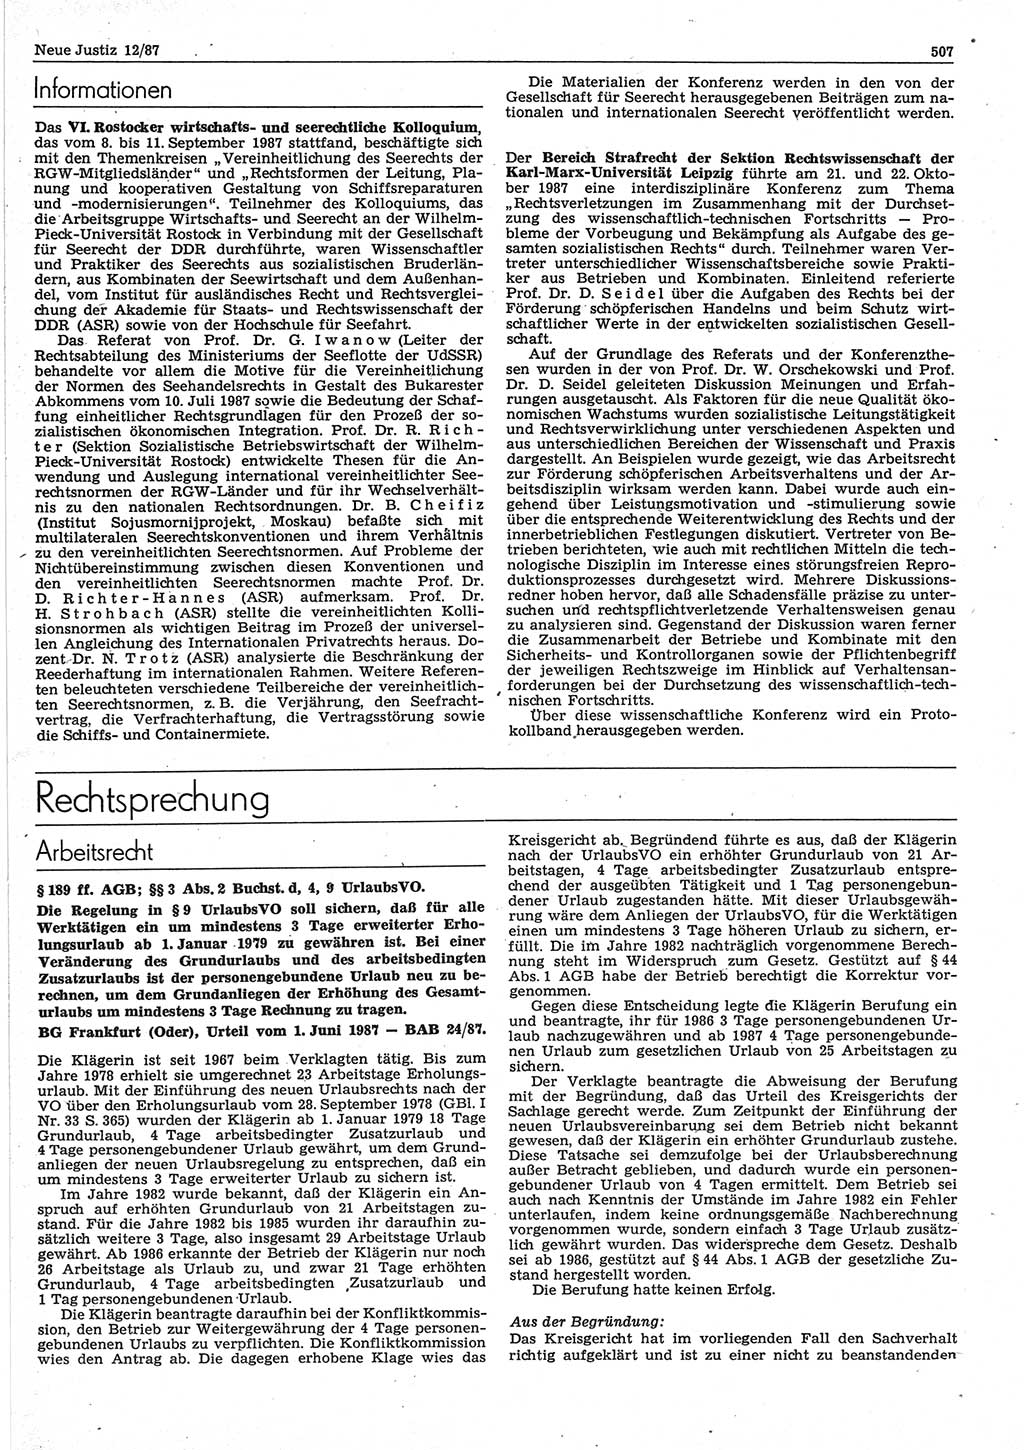 Neue Justiz (NJ), Zeitschrift für sozialistisches Recht und Gesetzlichkeit [Deutsche Demokratische Republik (DDR)], 41. Jahrgang 1987, Seite 507 (NJ DDR 1987, S. 507)